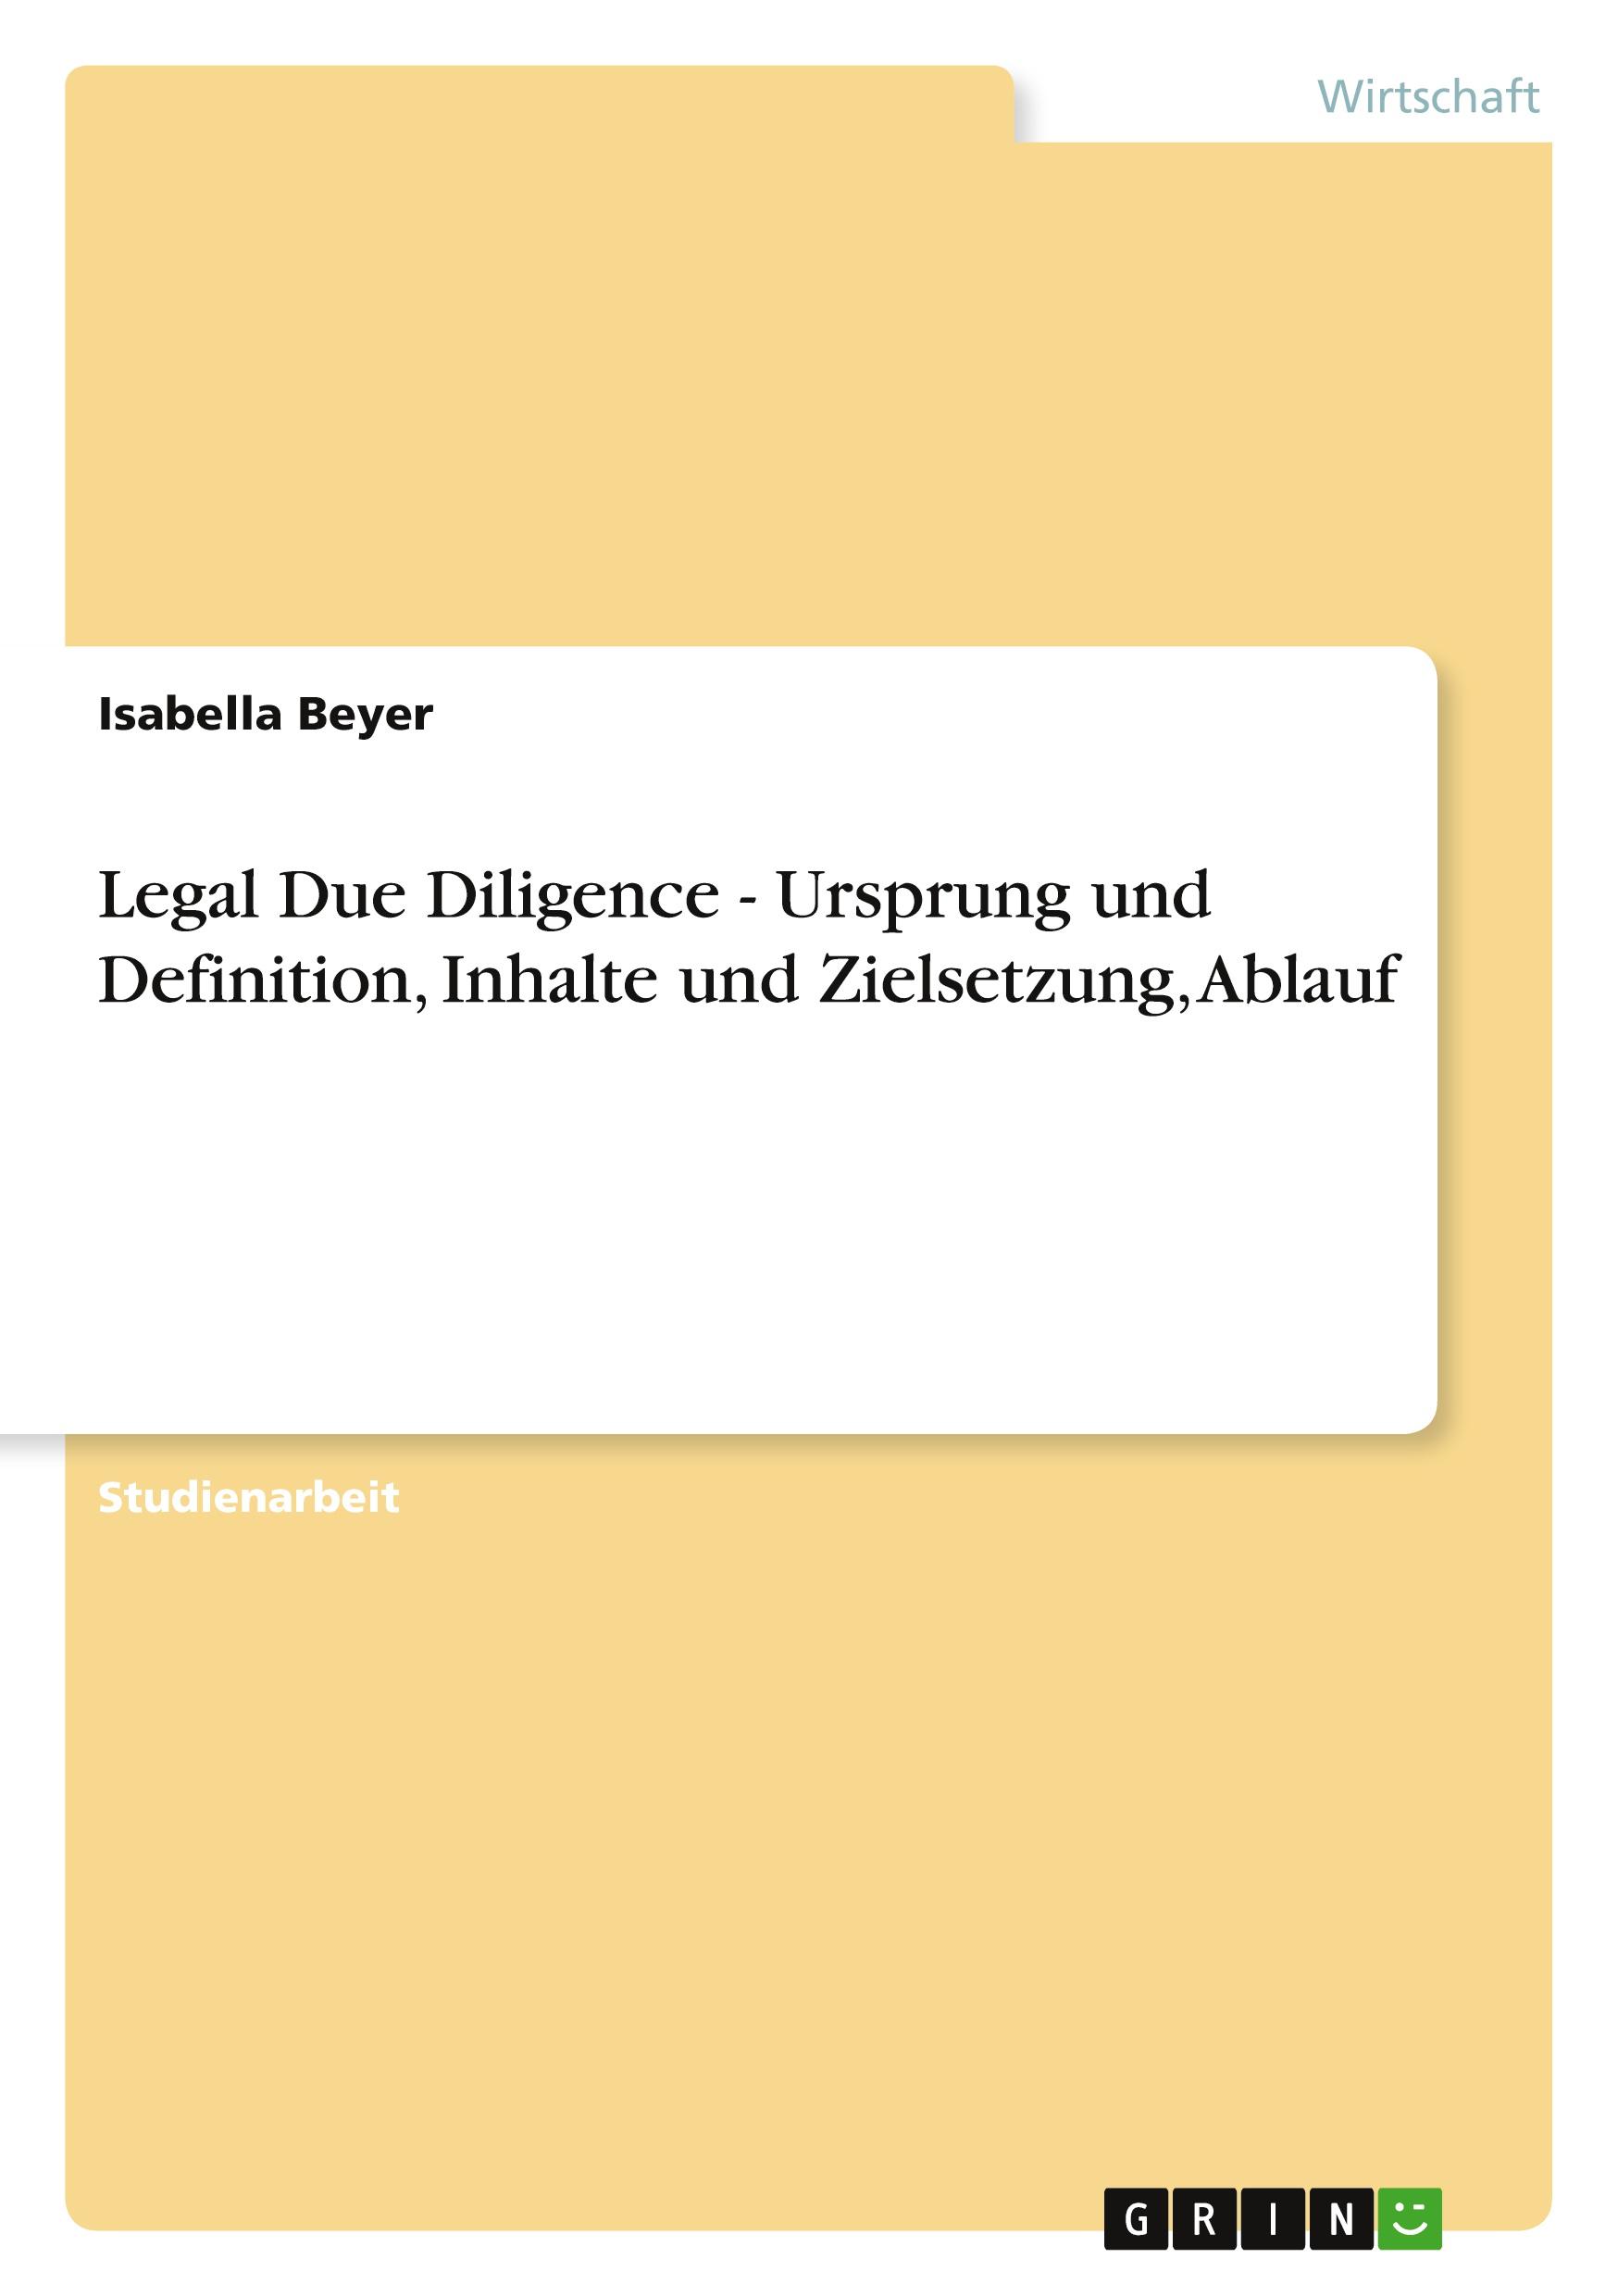 Legal Due Diligence - Ursprung und Definition, Inhalte und Zielsetzung, Ablauf  Isabella Beyer  Taschenbuch  Deutsch  2010 - Beyer, Isabella